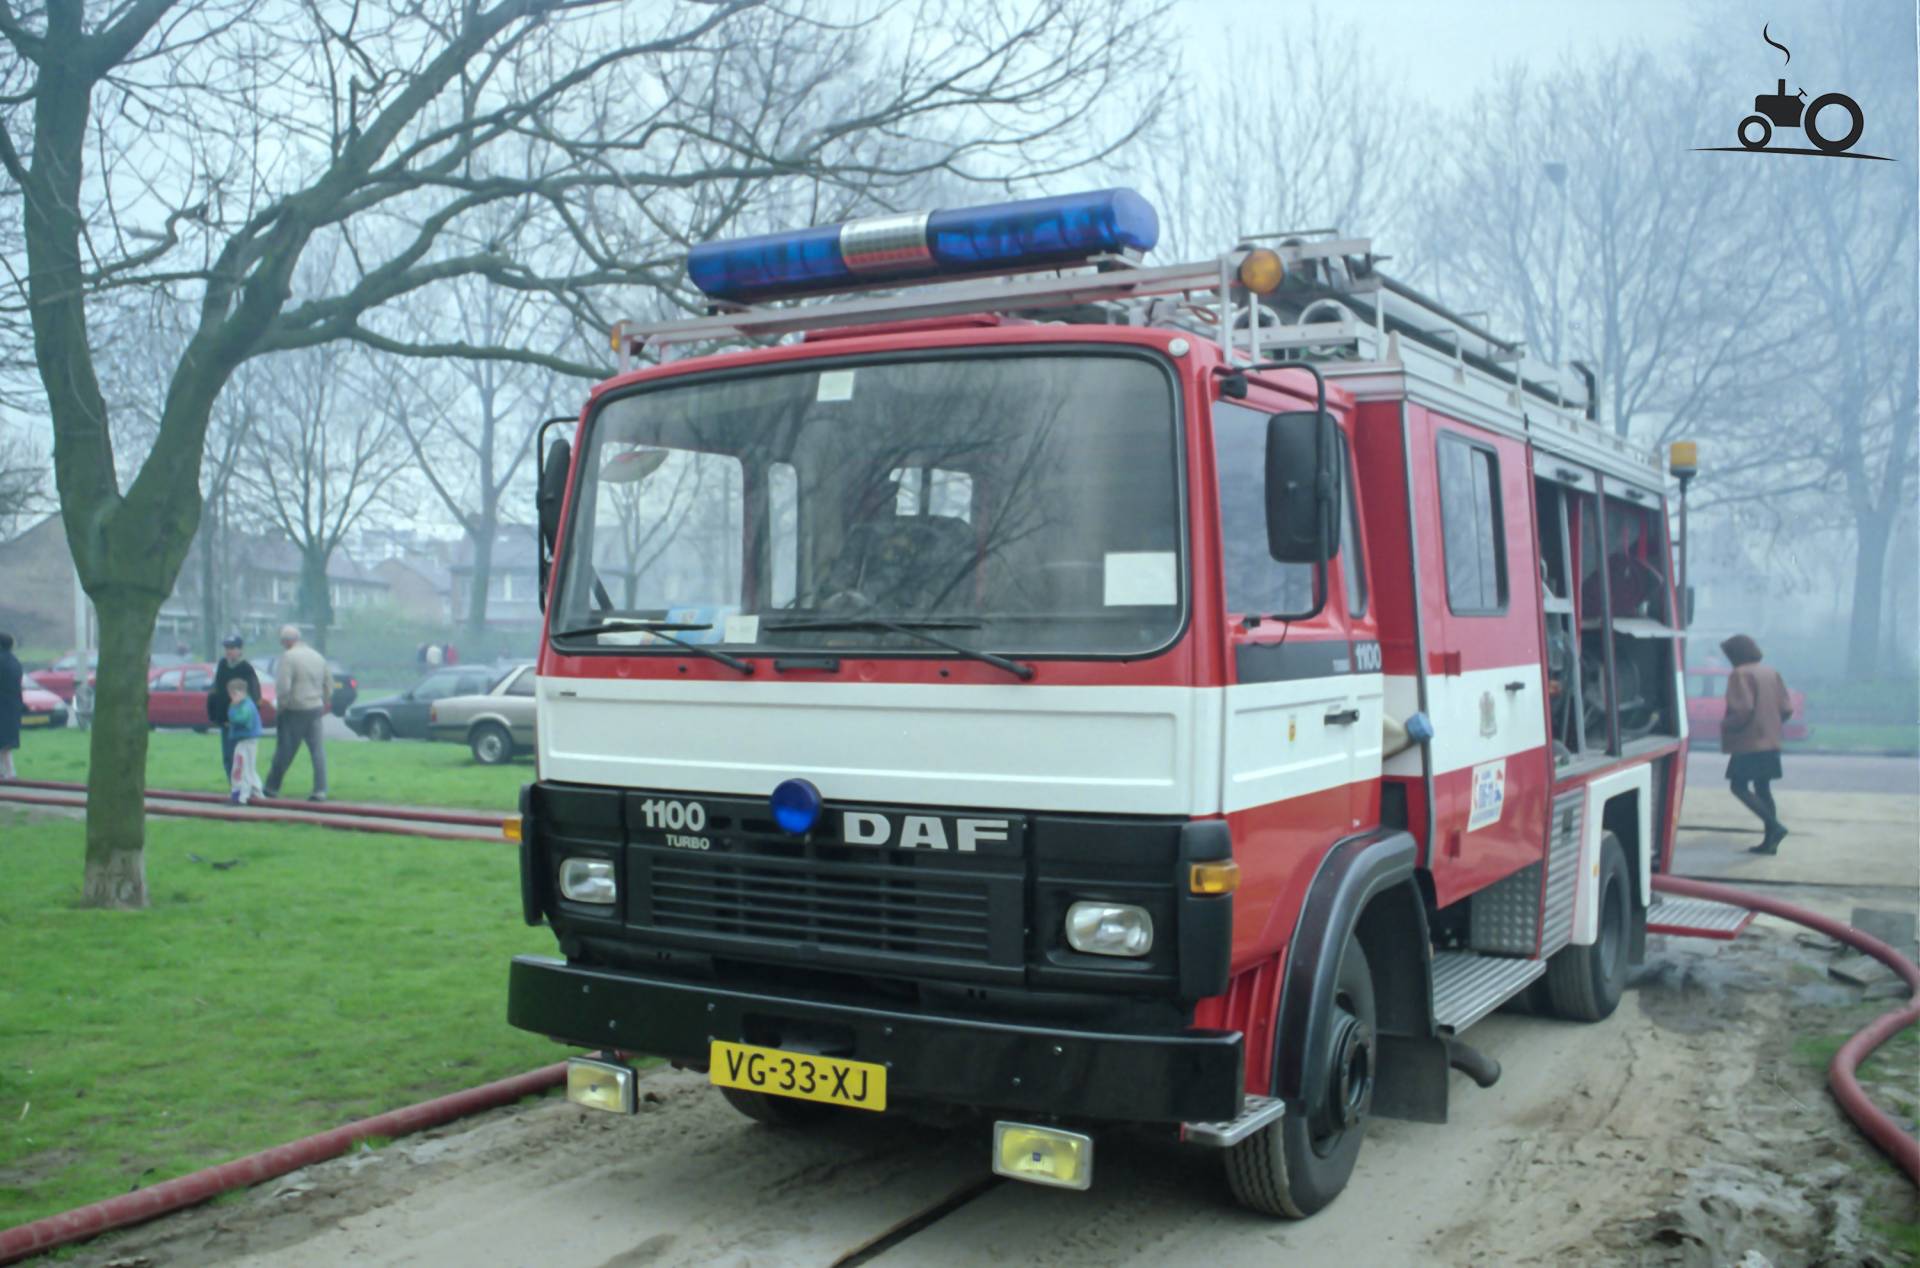 DAF 1100